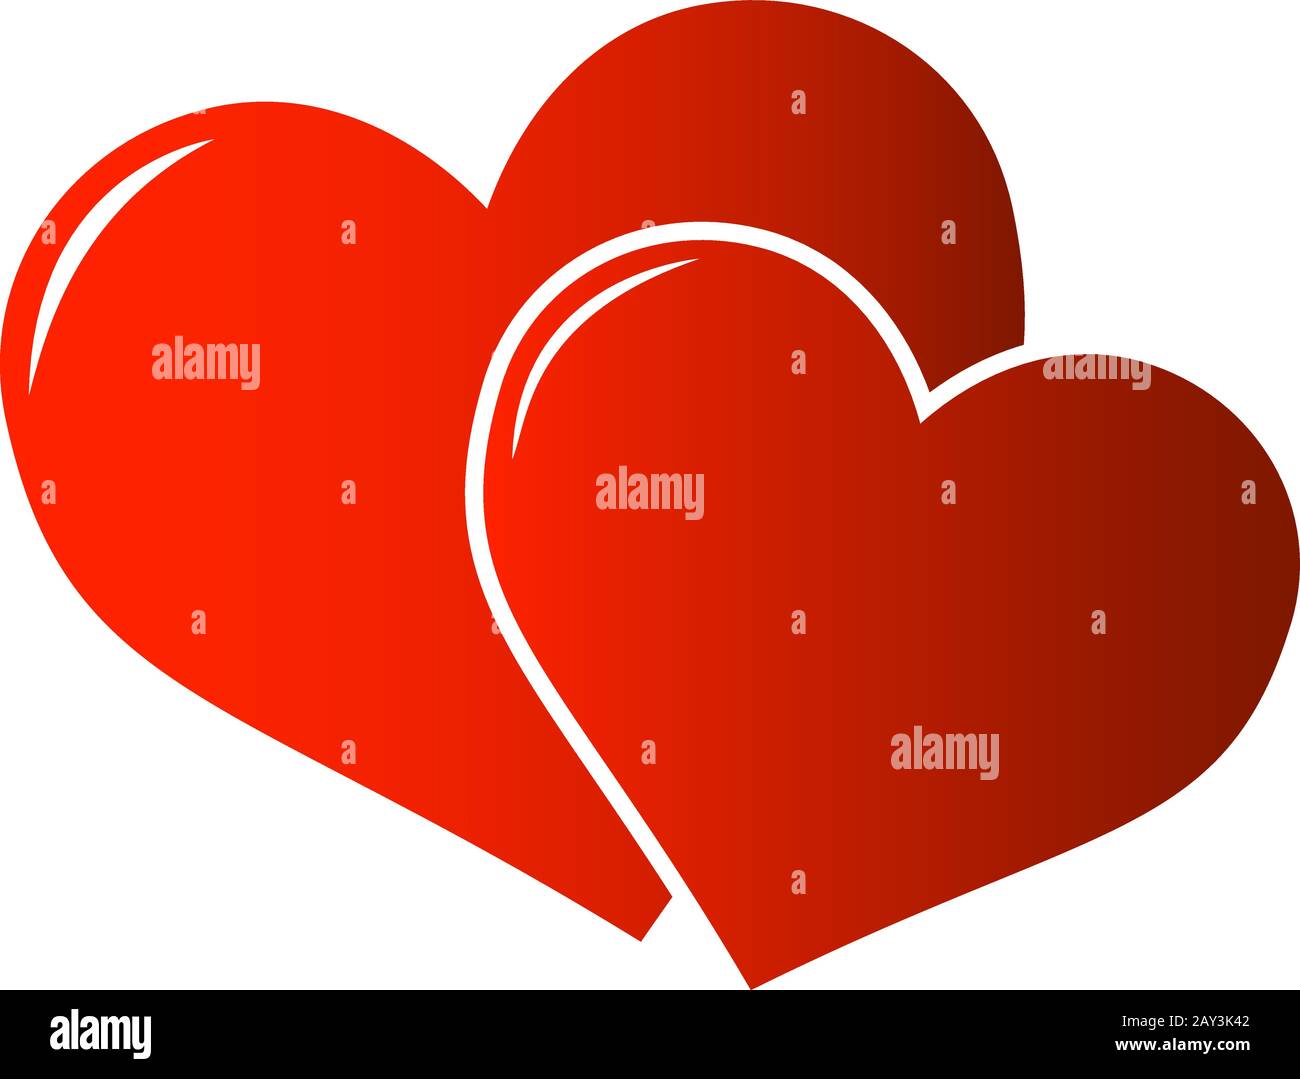 Zwei rote Herzensymbole oder Symbol für die Liebe oder romantische Beziehungsvektorillustration Stock Vektor